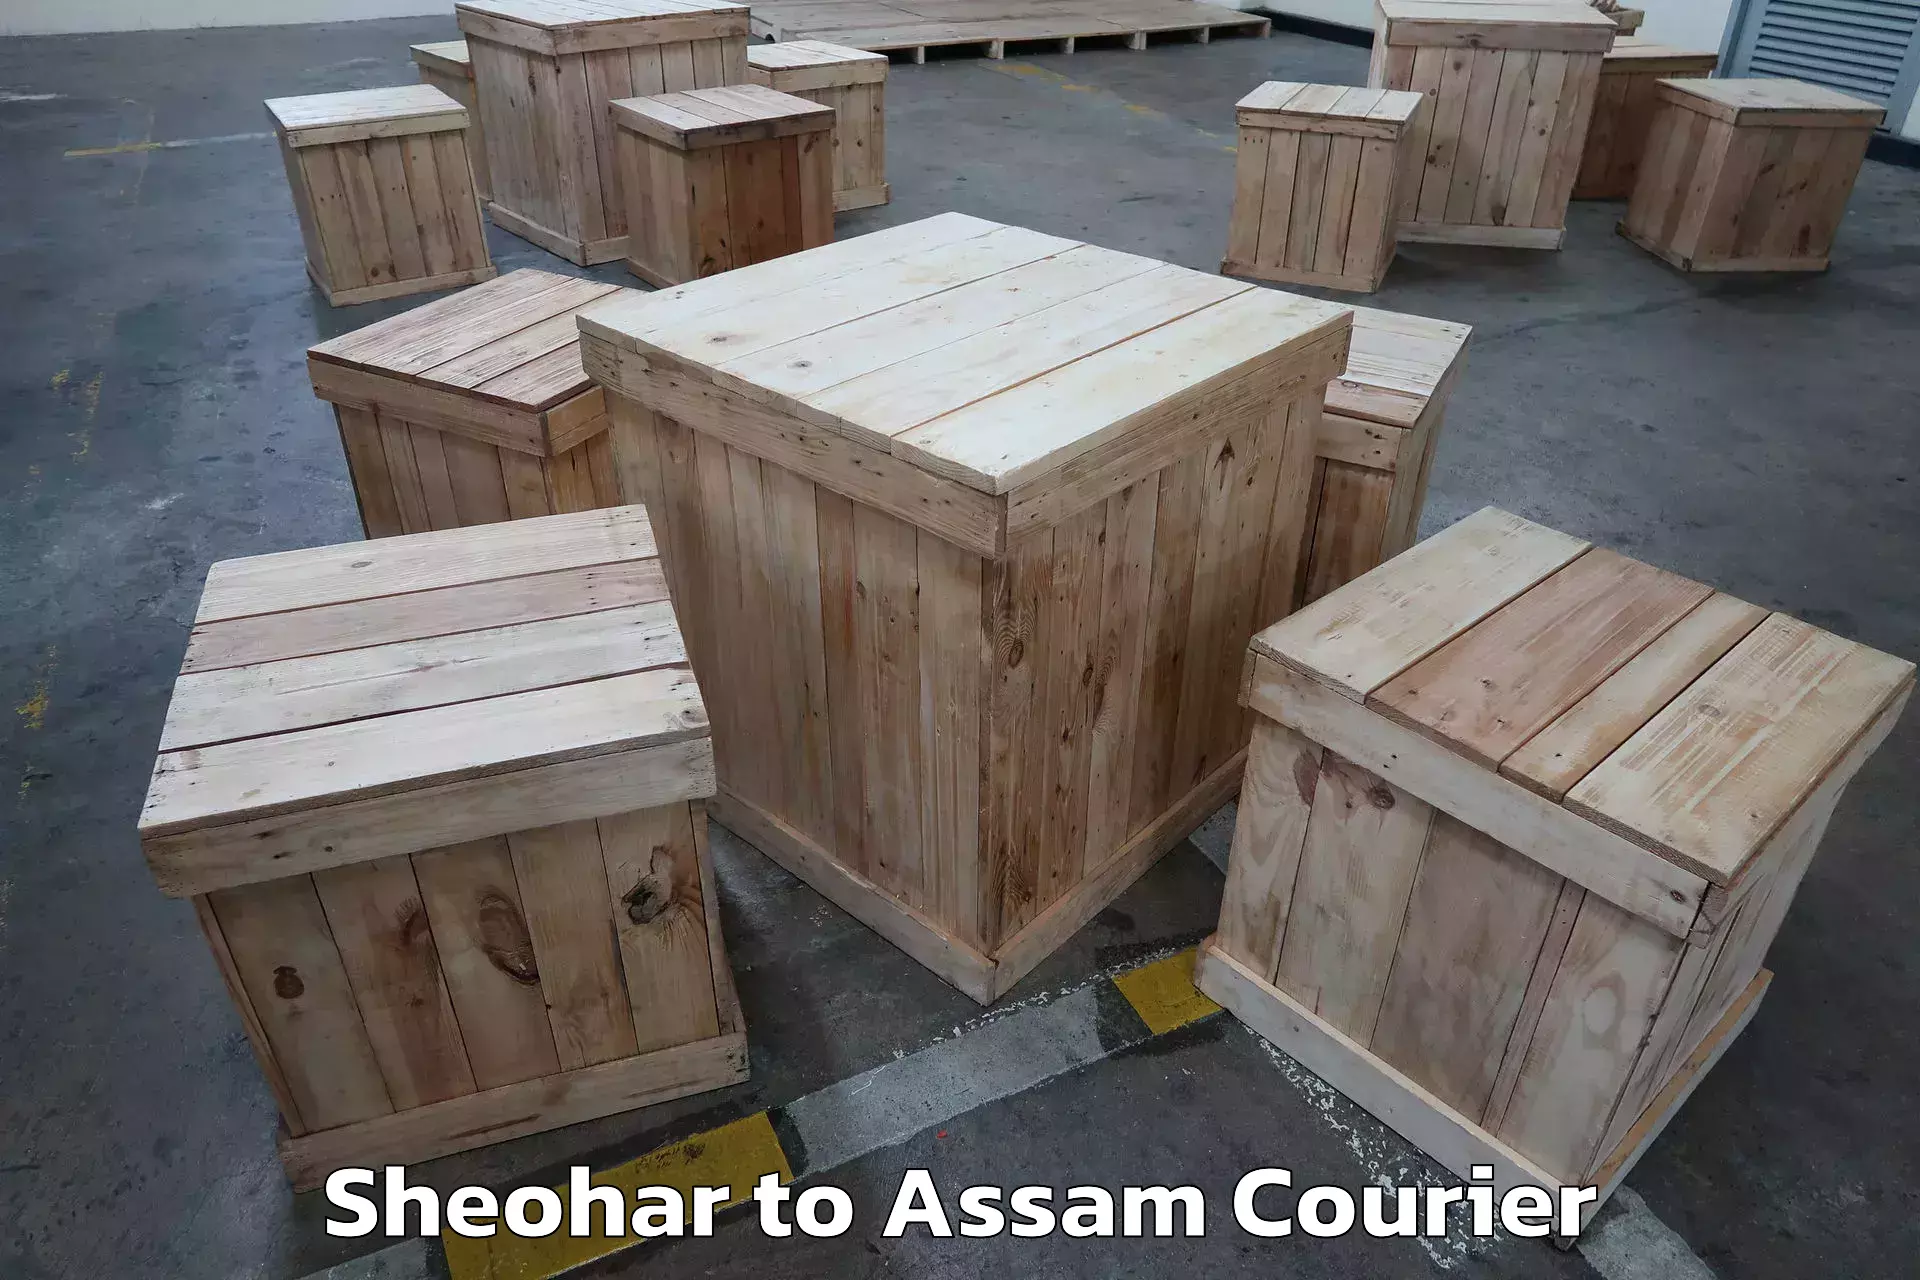 Skilled furniture transporters Sheohar to Assam